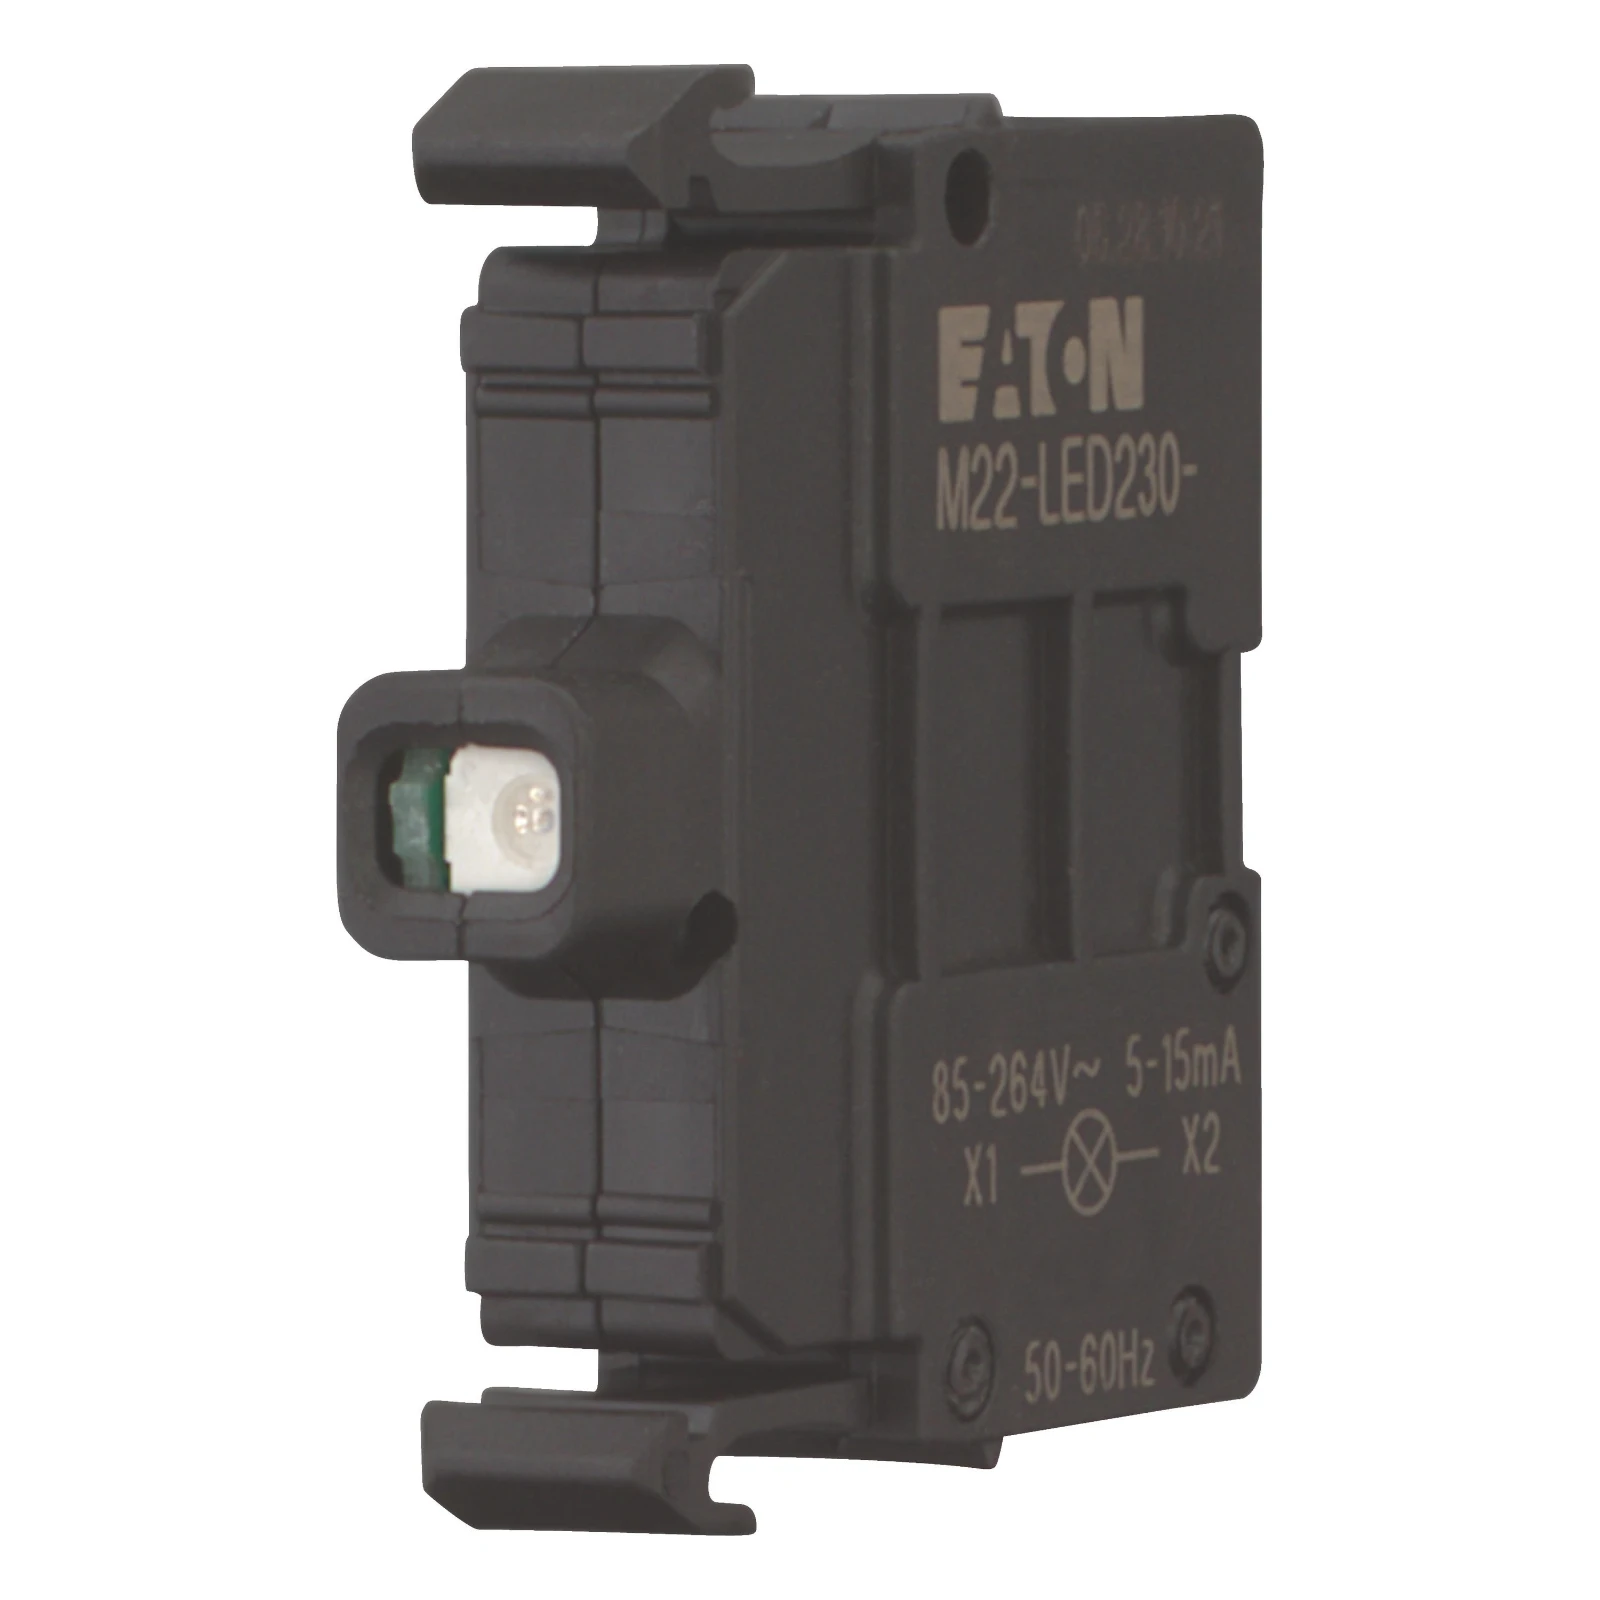 Eaton Signaallamphouder M22-LED230-B